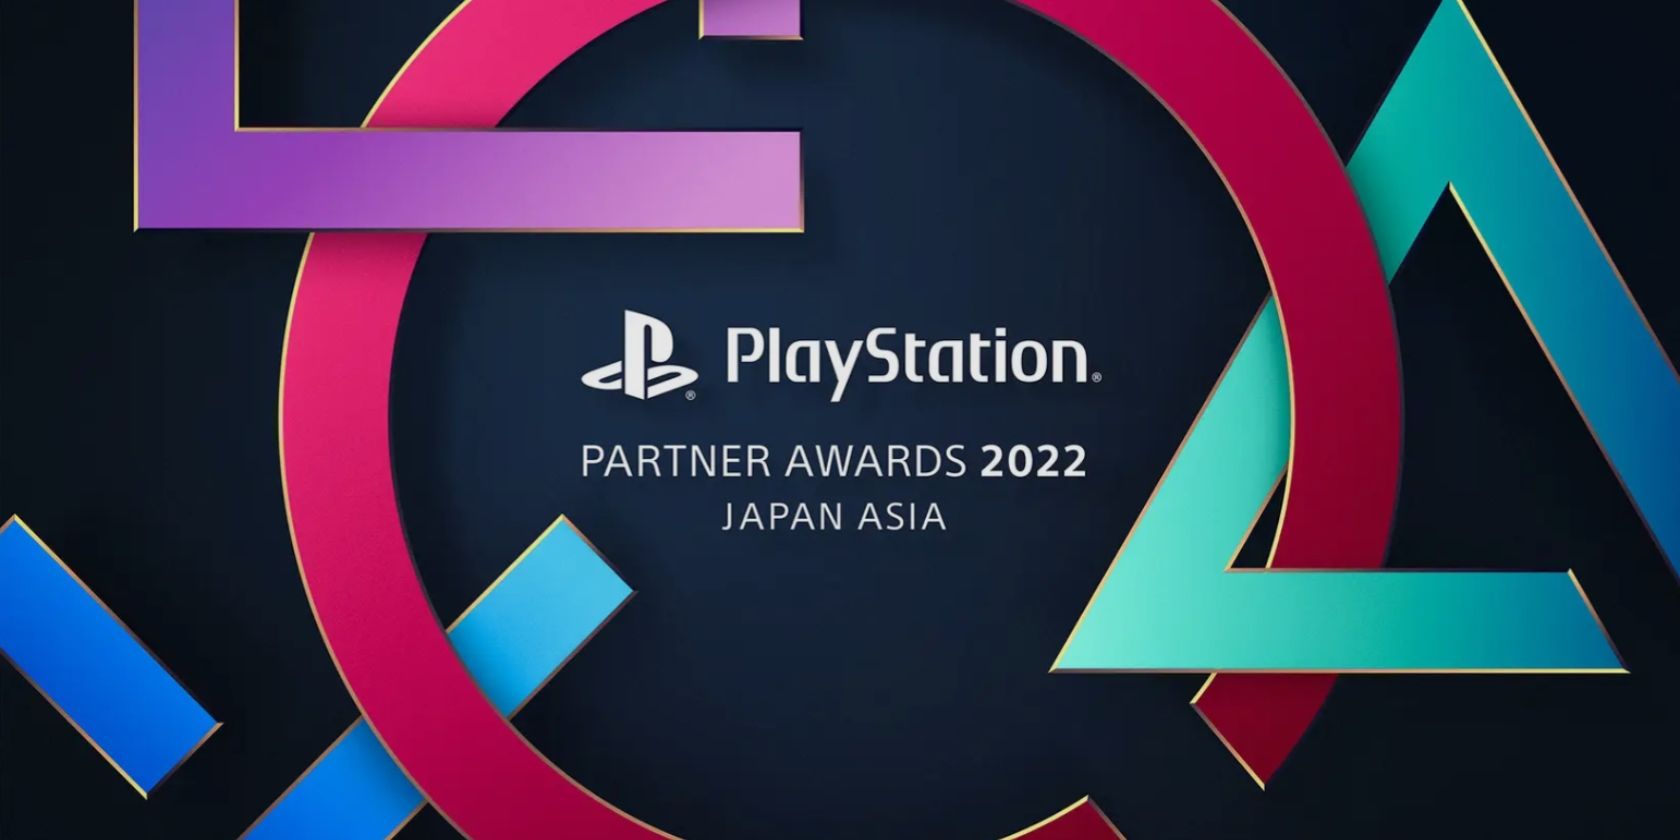 Graphique promotionnel officiel des PlayStation Partner Awards 2022 présentant les boutons caractéristiques de PlayStation.